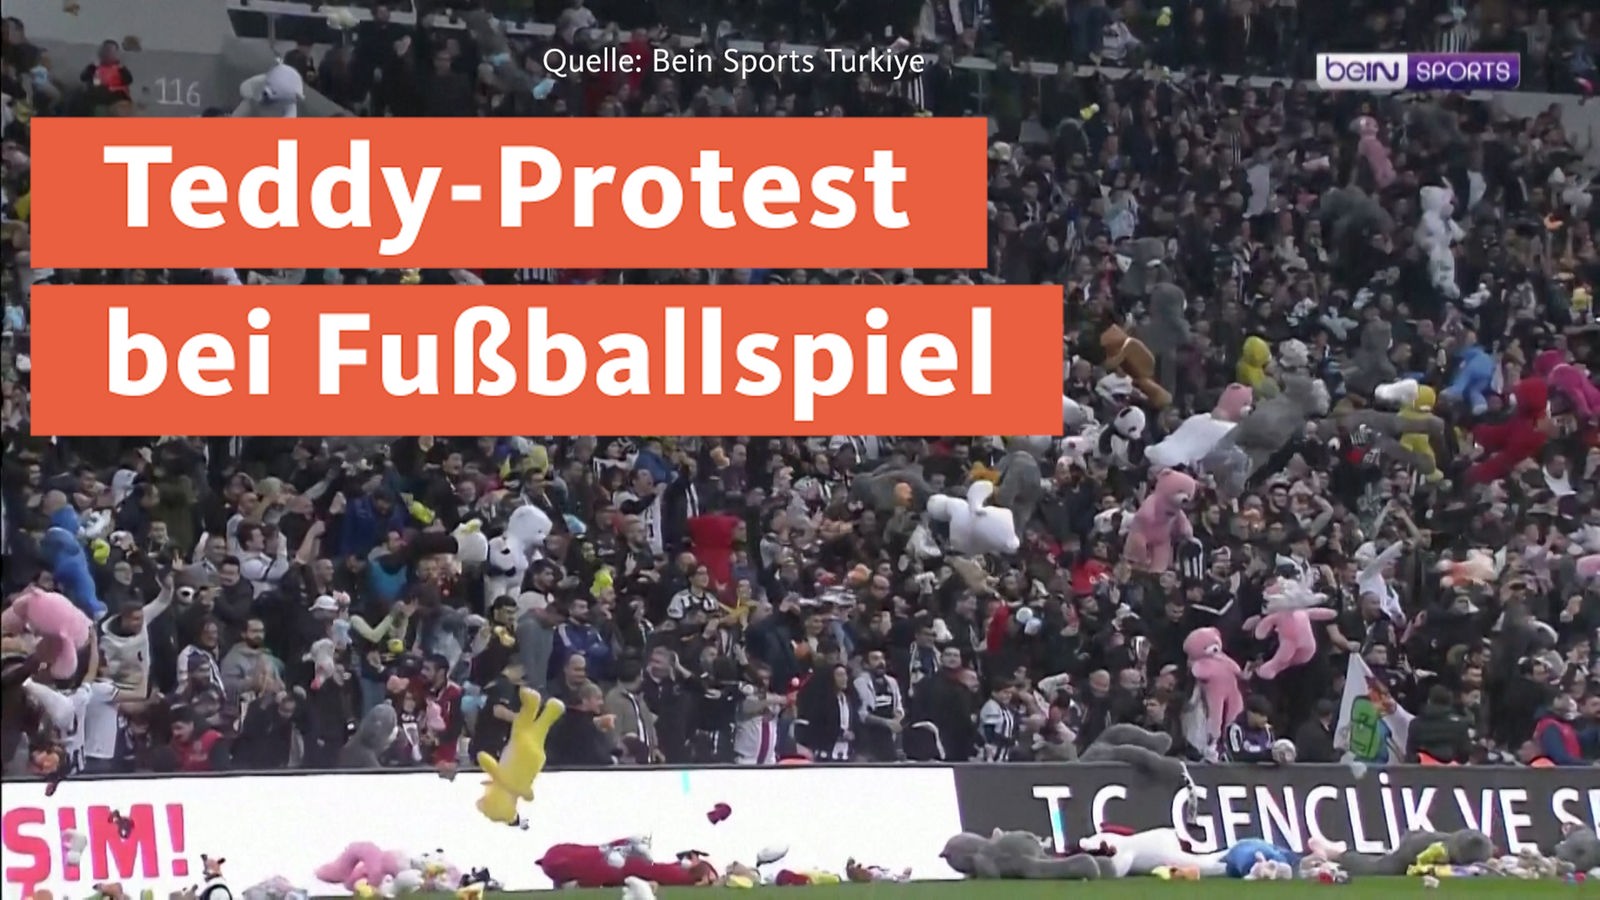 Istanbuler Fußballfans werfen Teddys - und fordern Erdoğans Rücktritt - Nachrichten